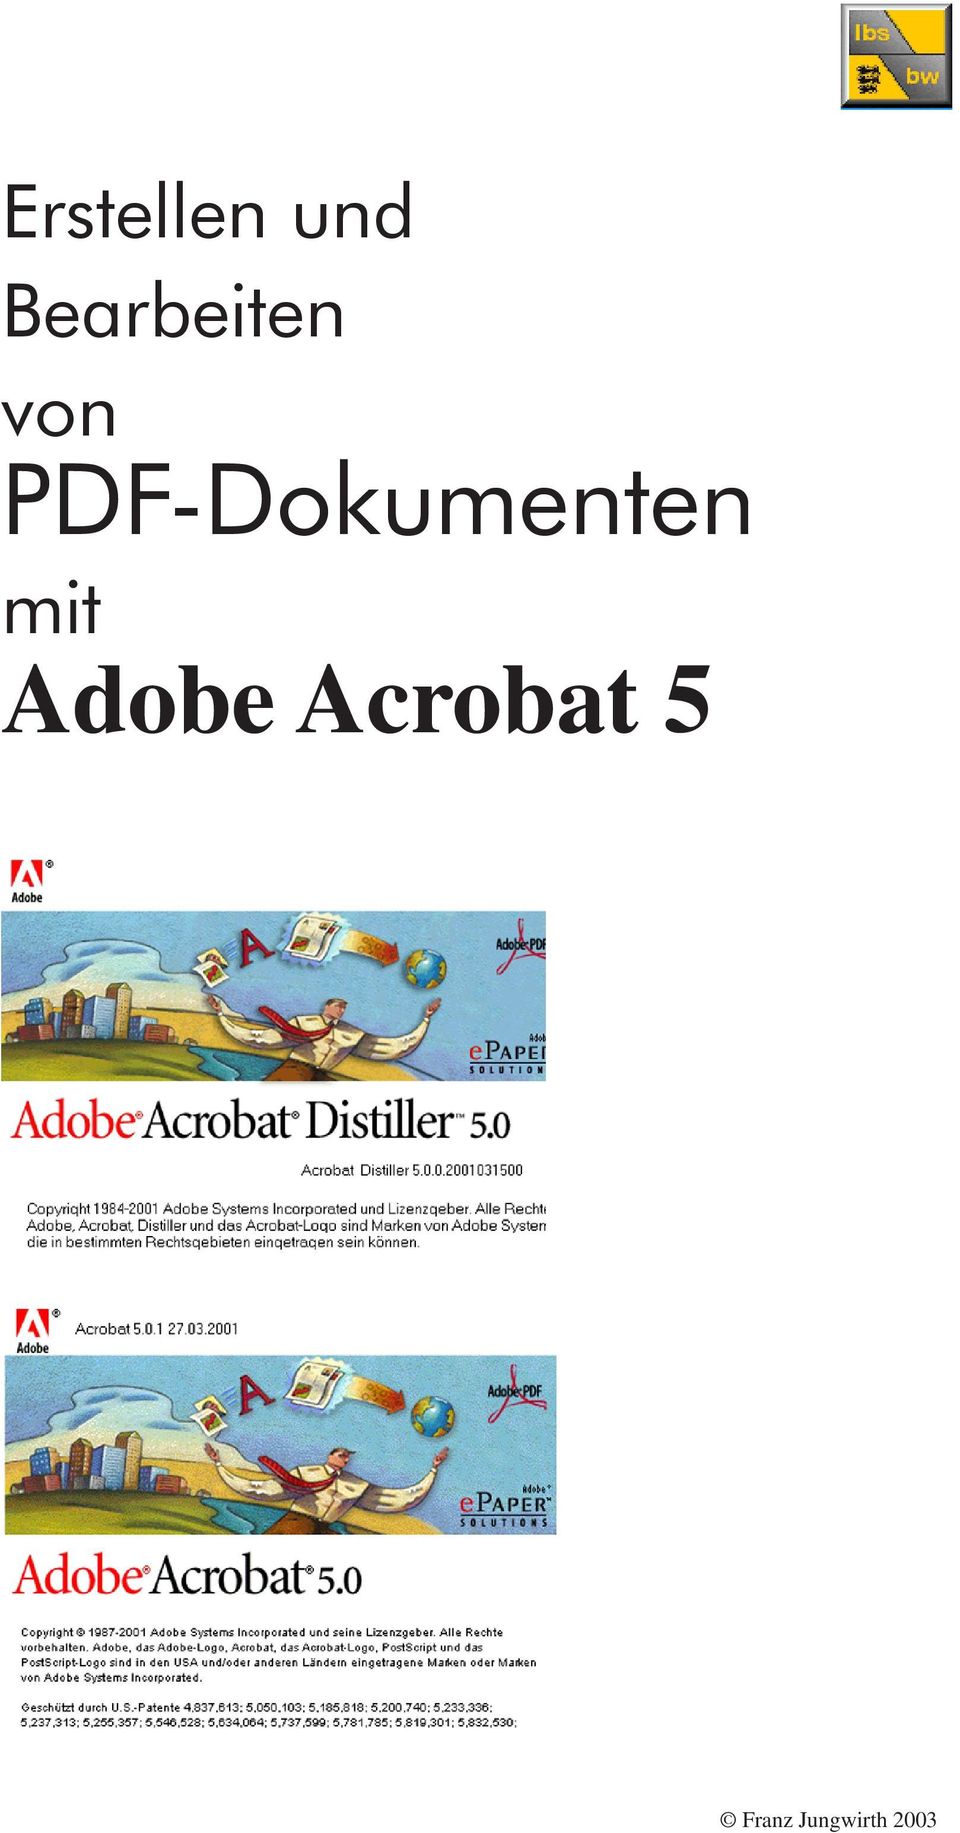 PDF-Dokumenten mit